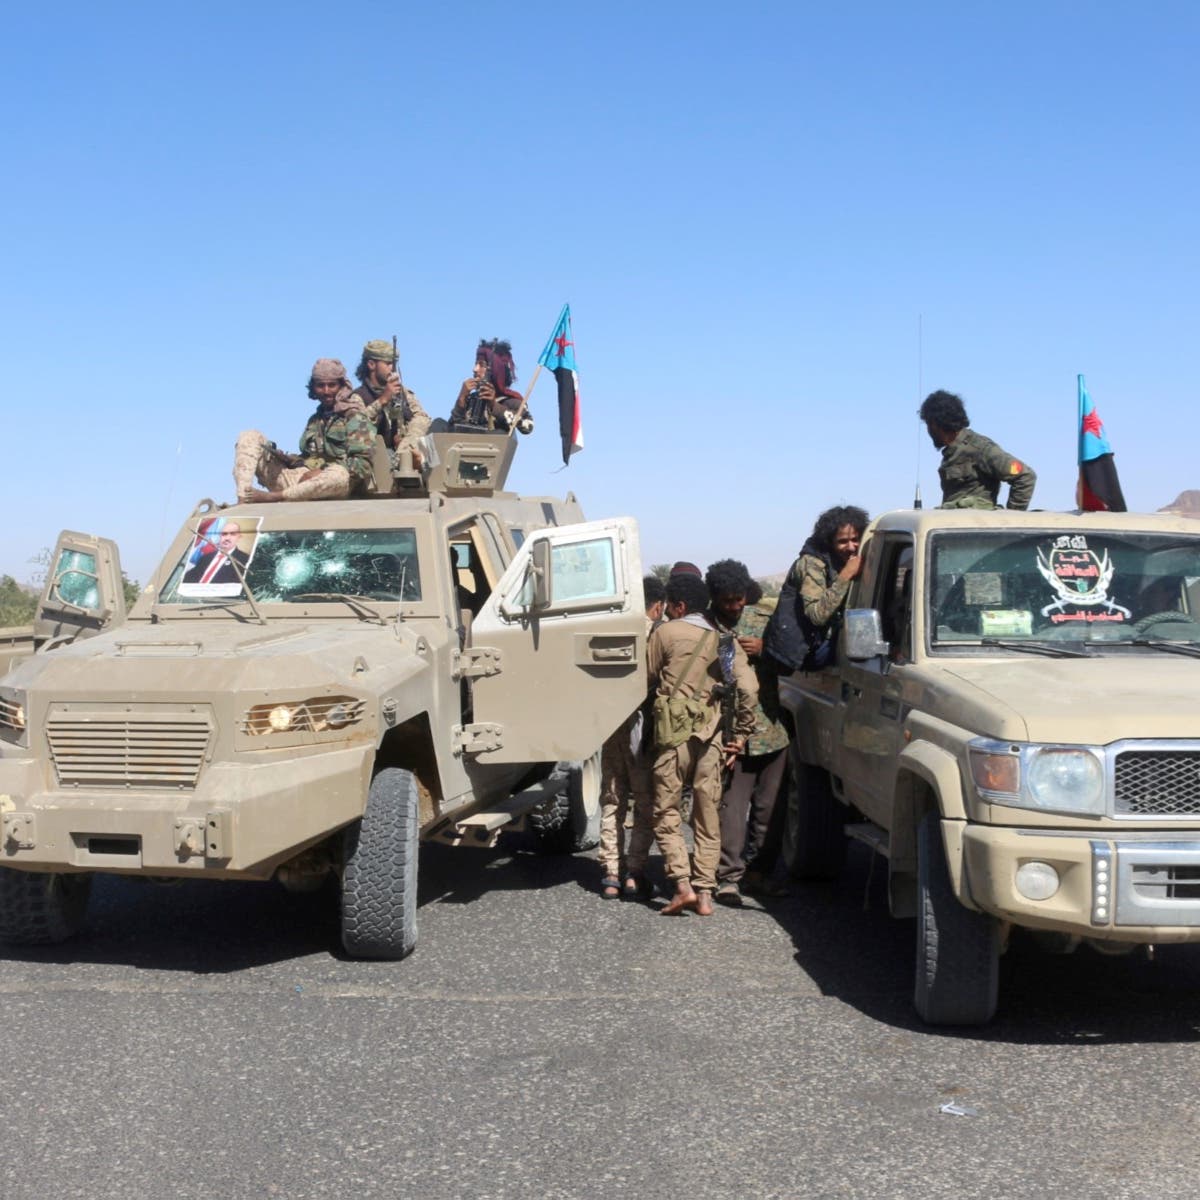 التحالف: تدمير 13 آلية عسكرية للحوثي في مأرب وحجة